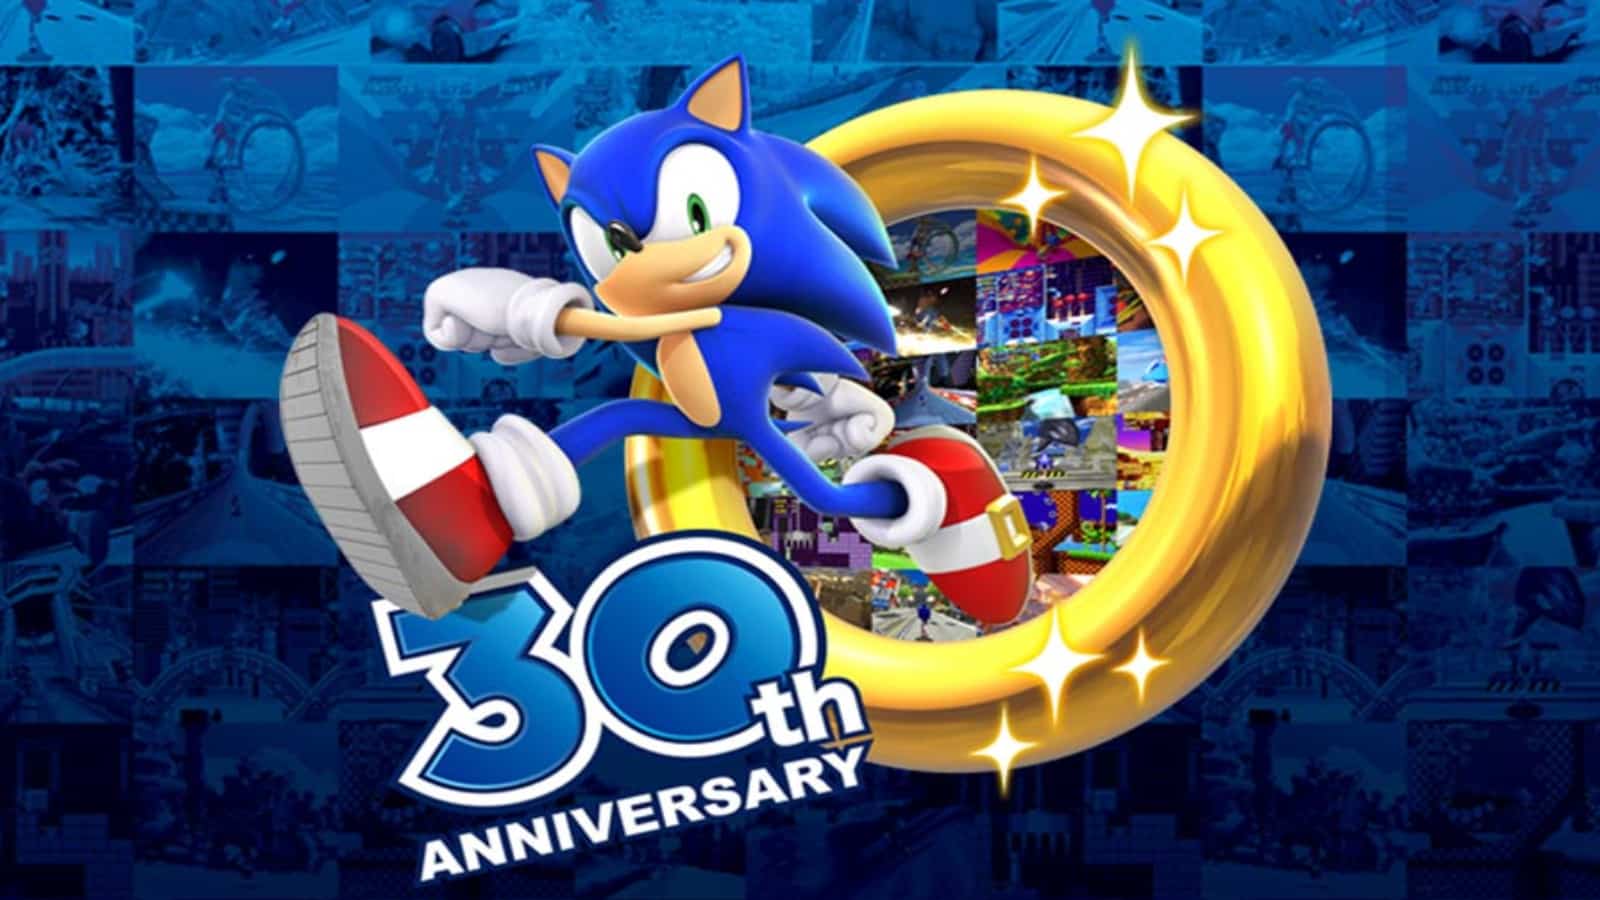 Sonic ring running 30th anniversary